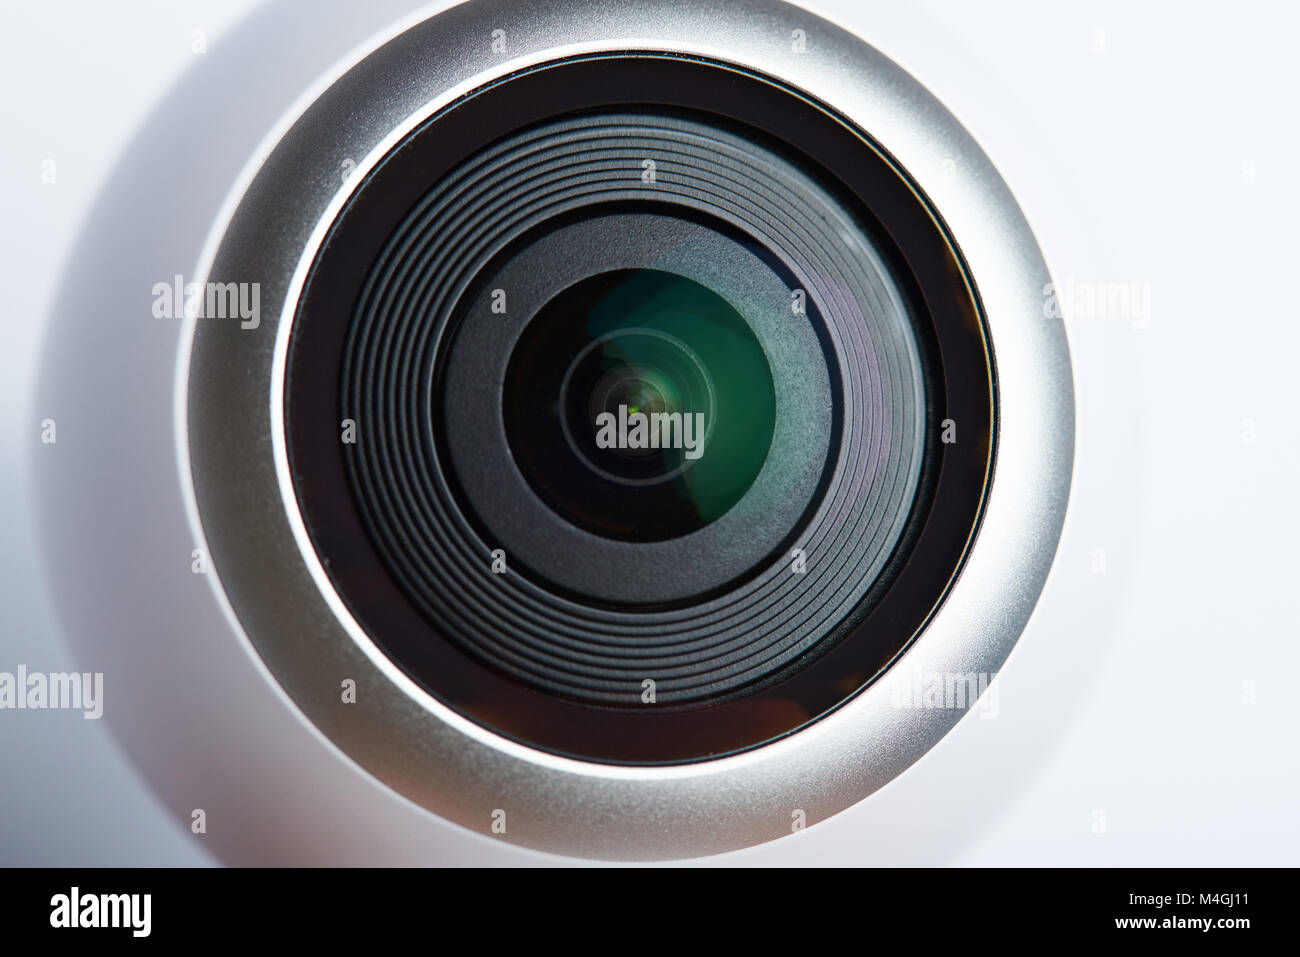 360 grado obiettivo fotocamera close up isolati su sfondo bianco Foto Stock